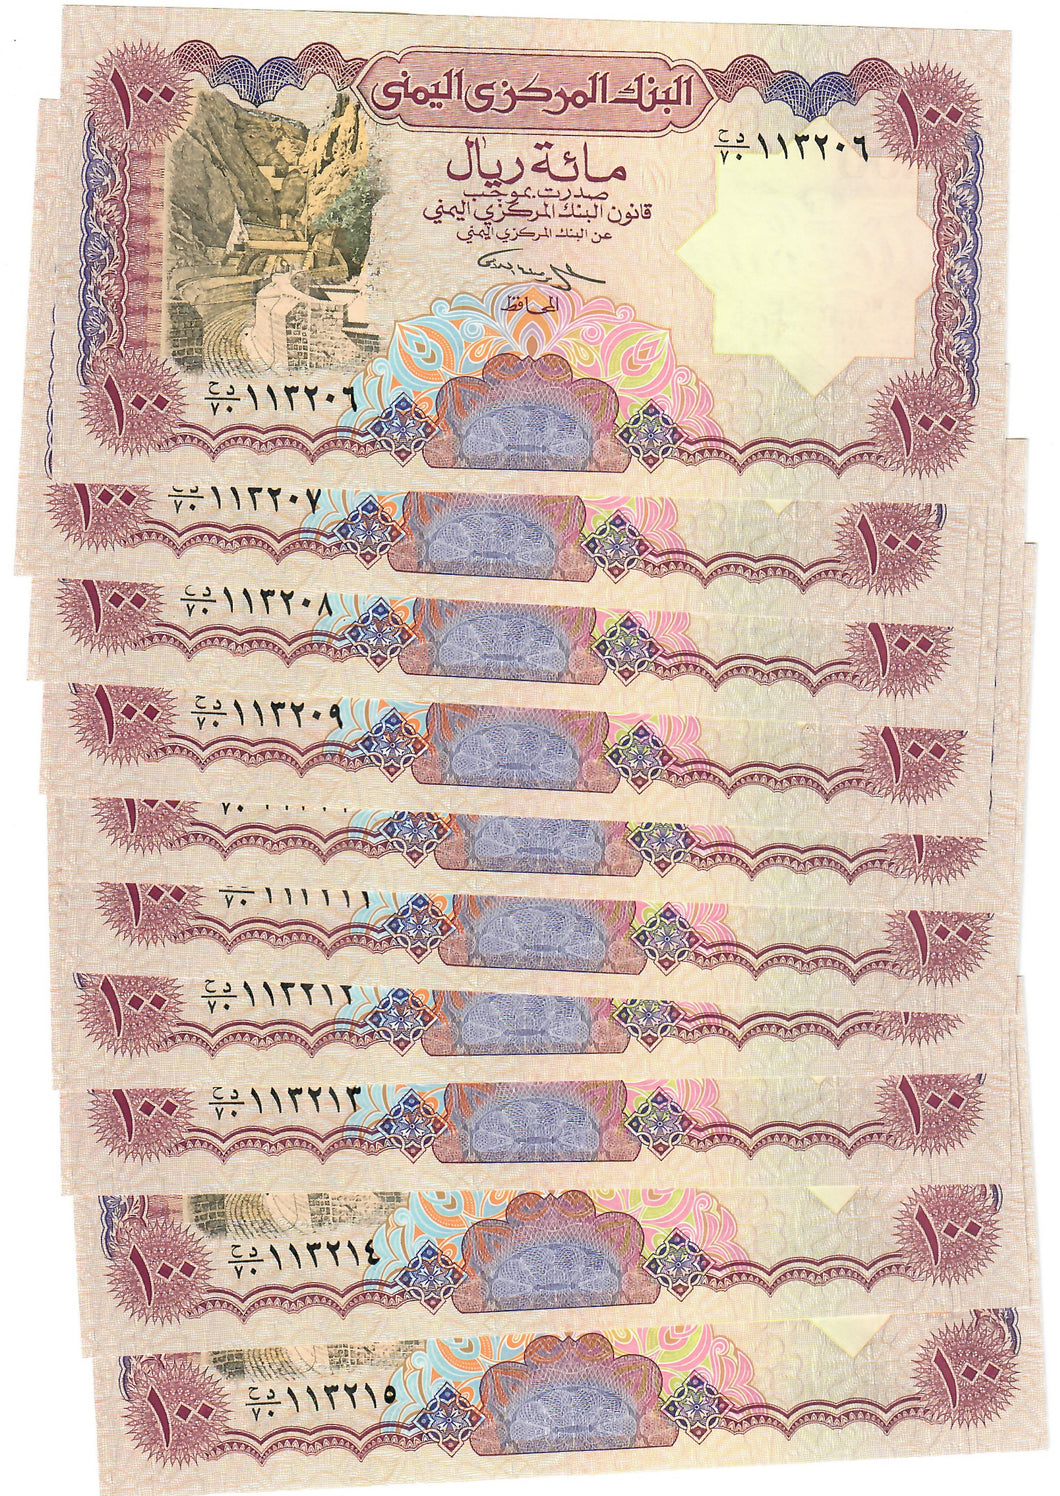 Yemen 10x 100 Rials 1993 UNC